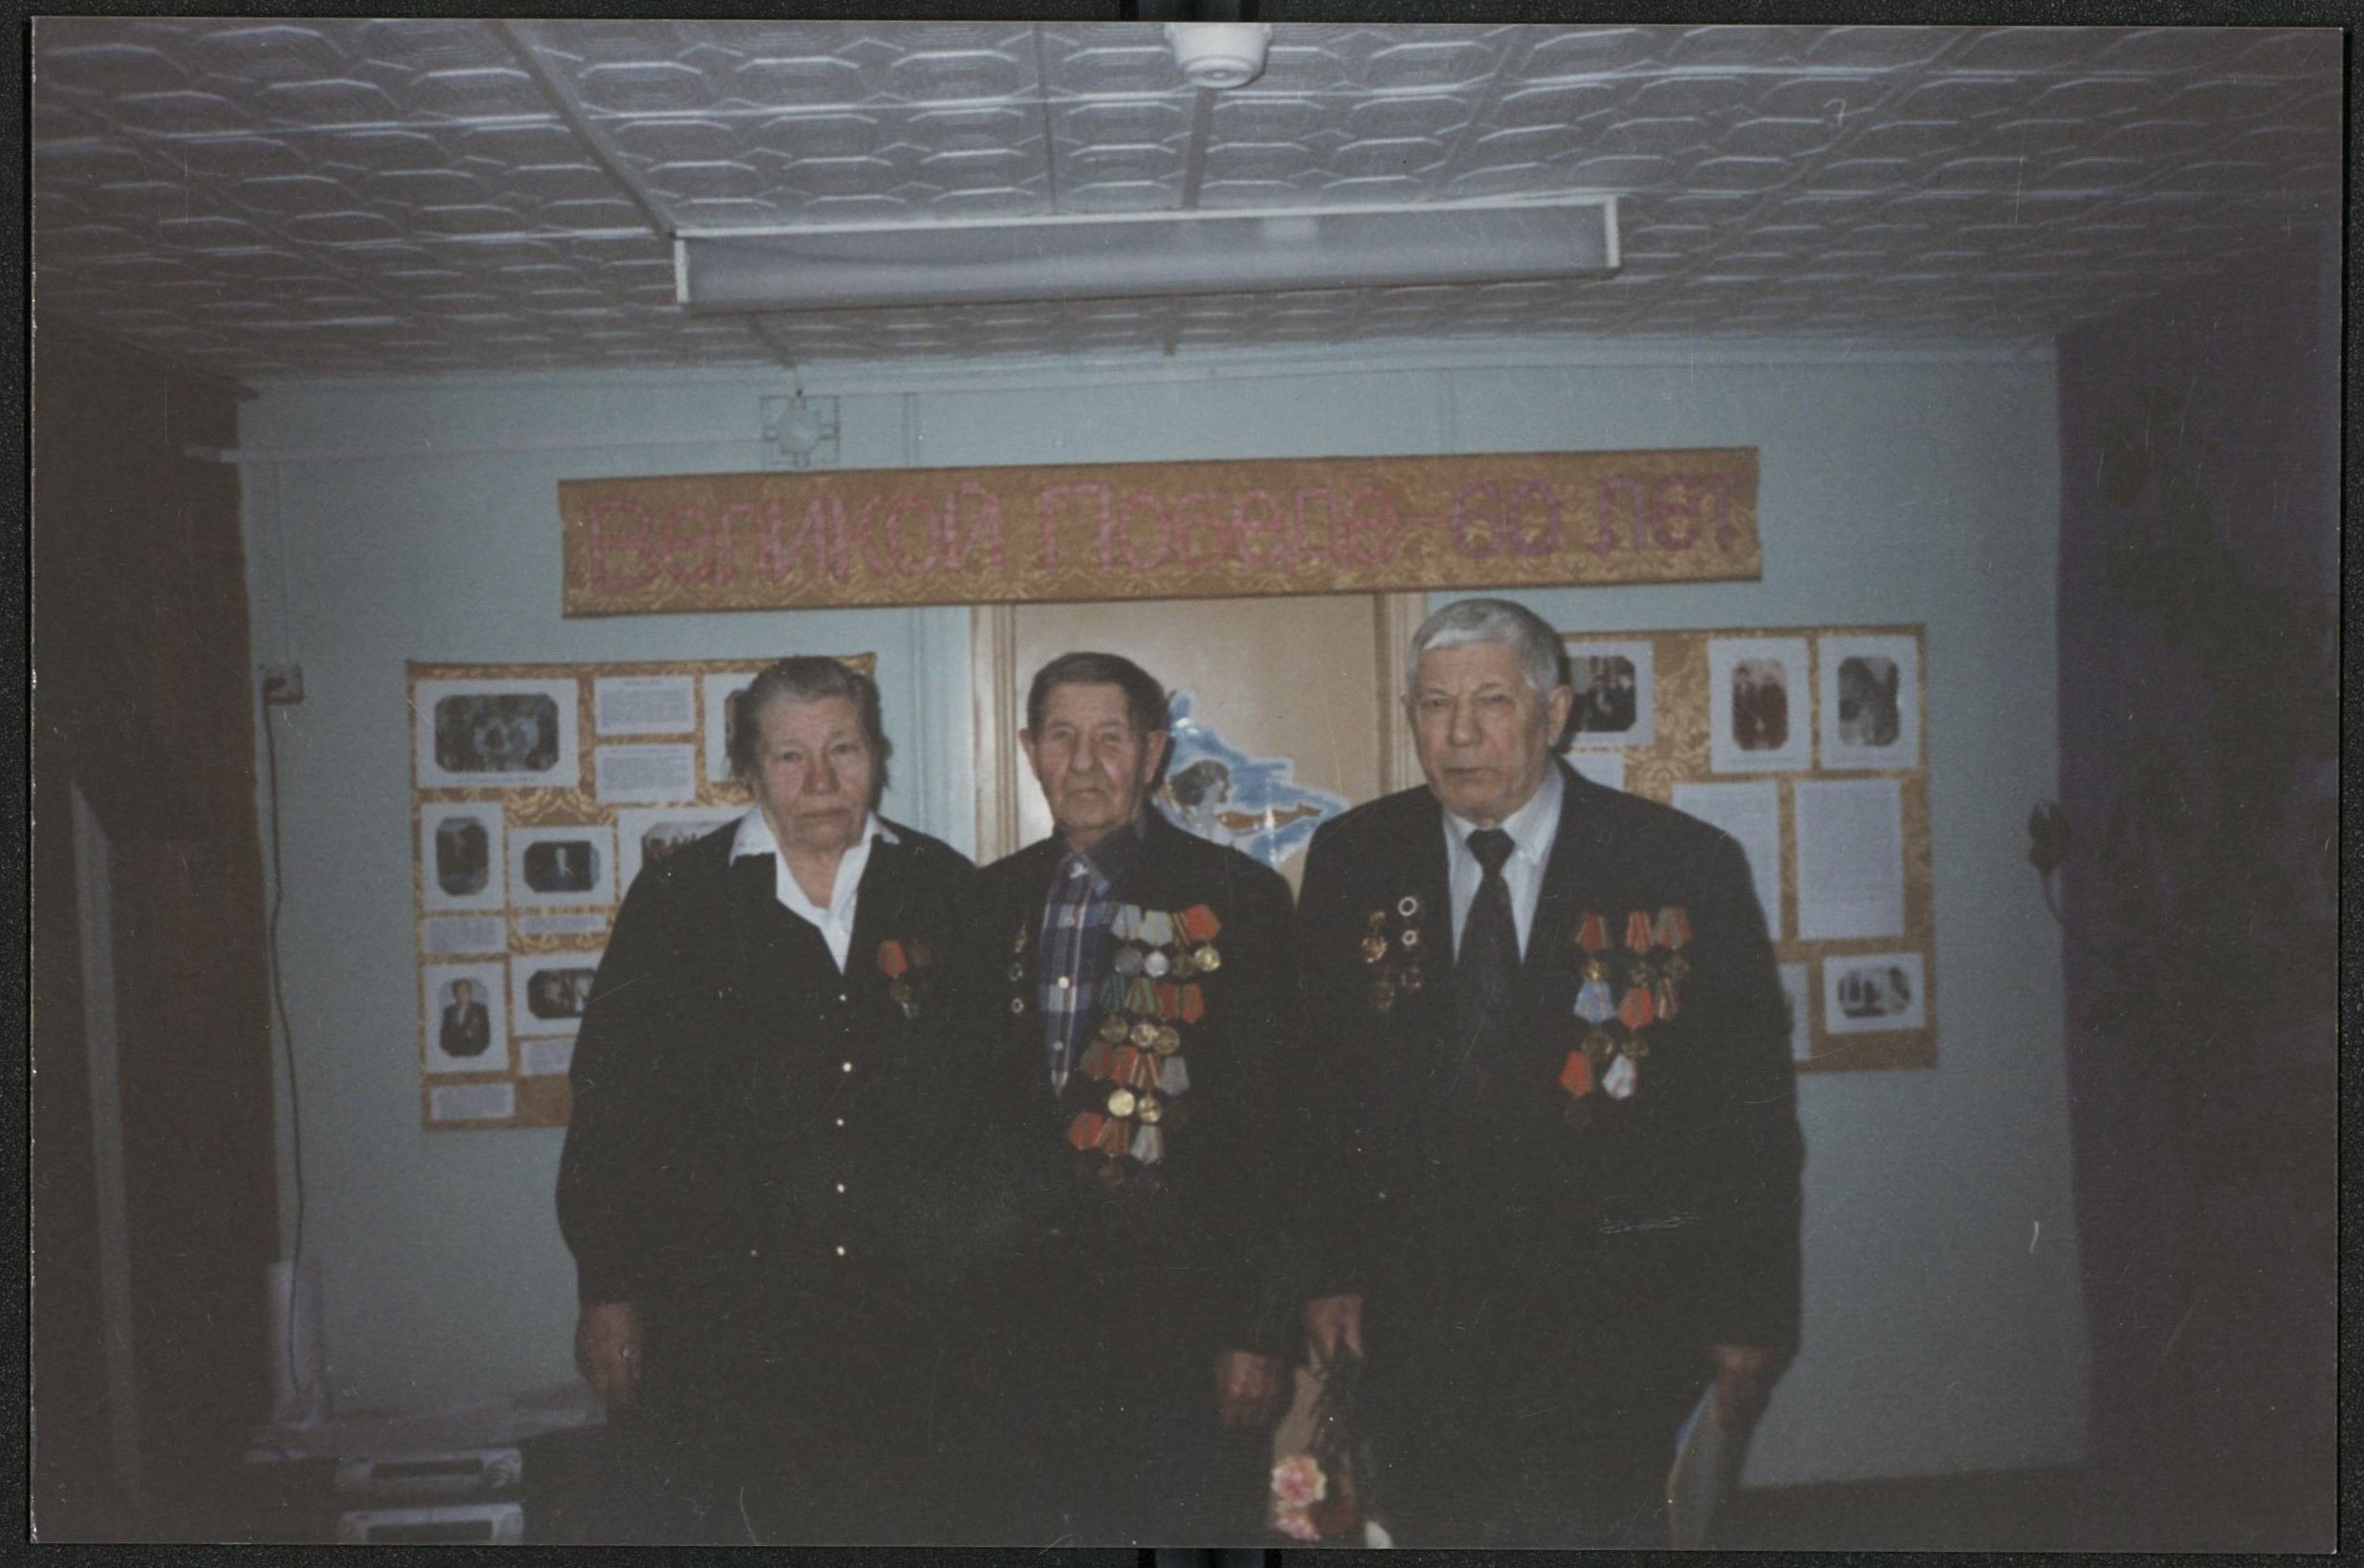 Слева направо стоят К.М. Другова, Х.М. Бульхин, В.Л. Другов у выставочных стендов